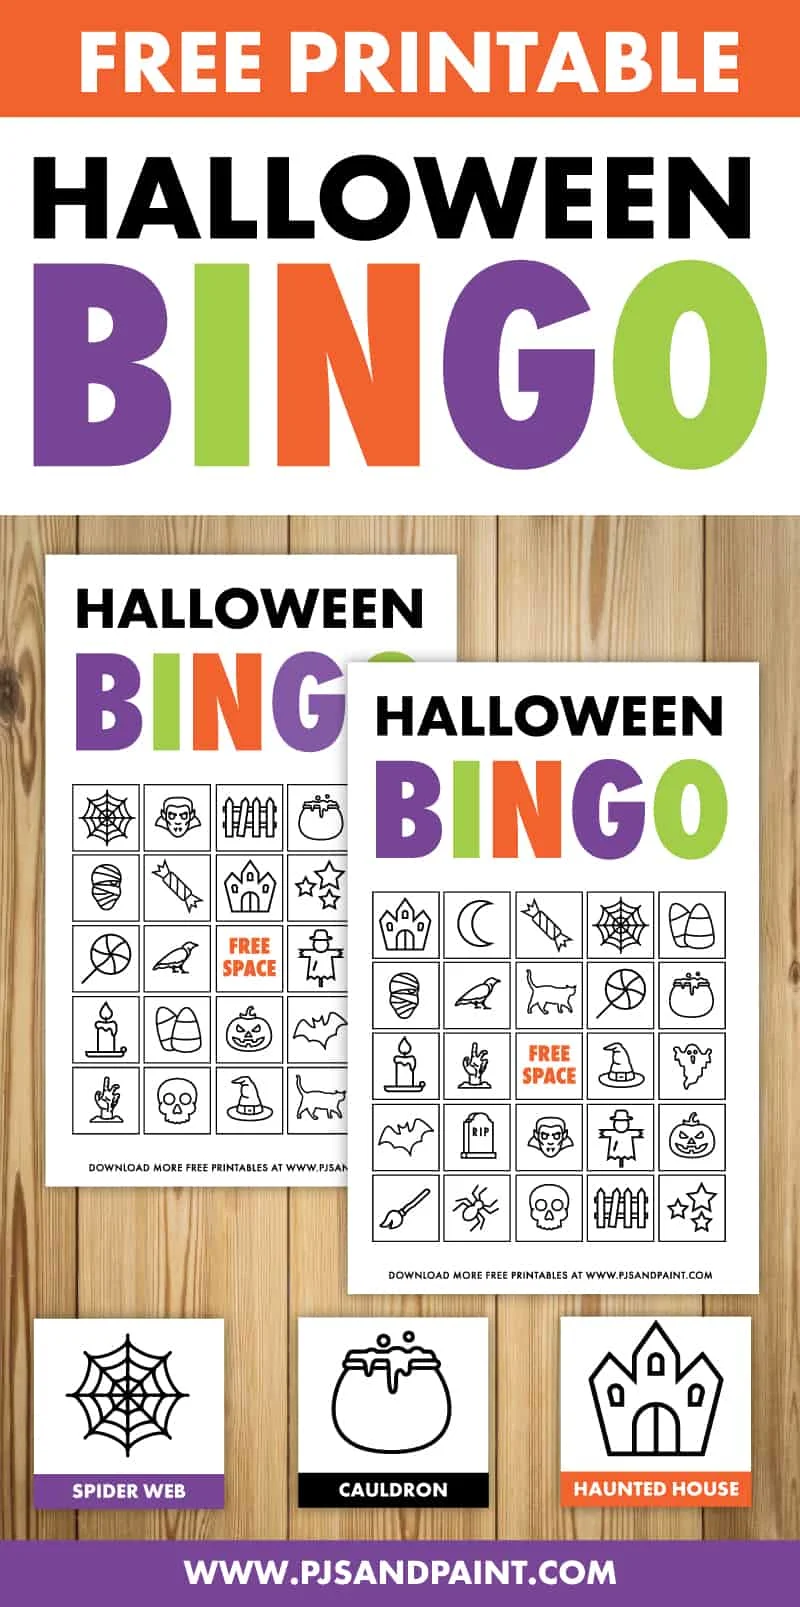 Bingo games online to play